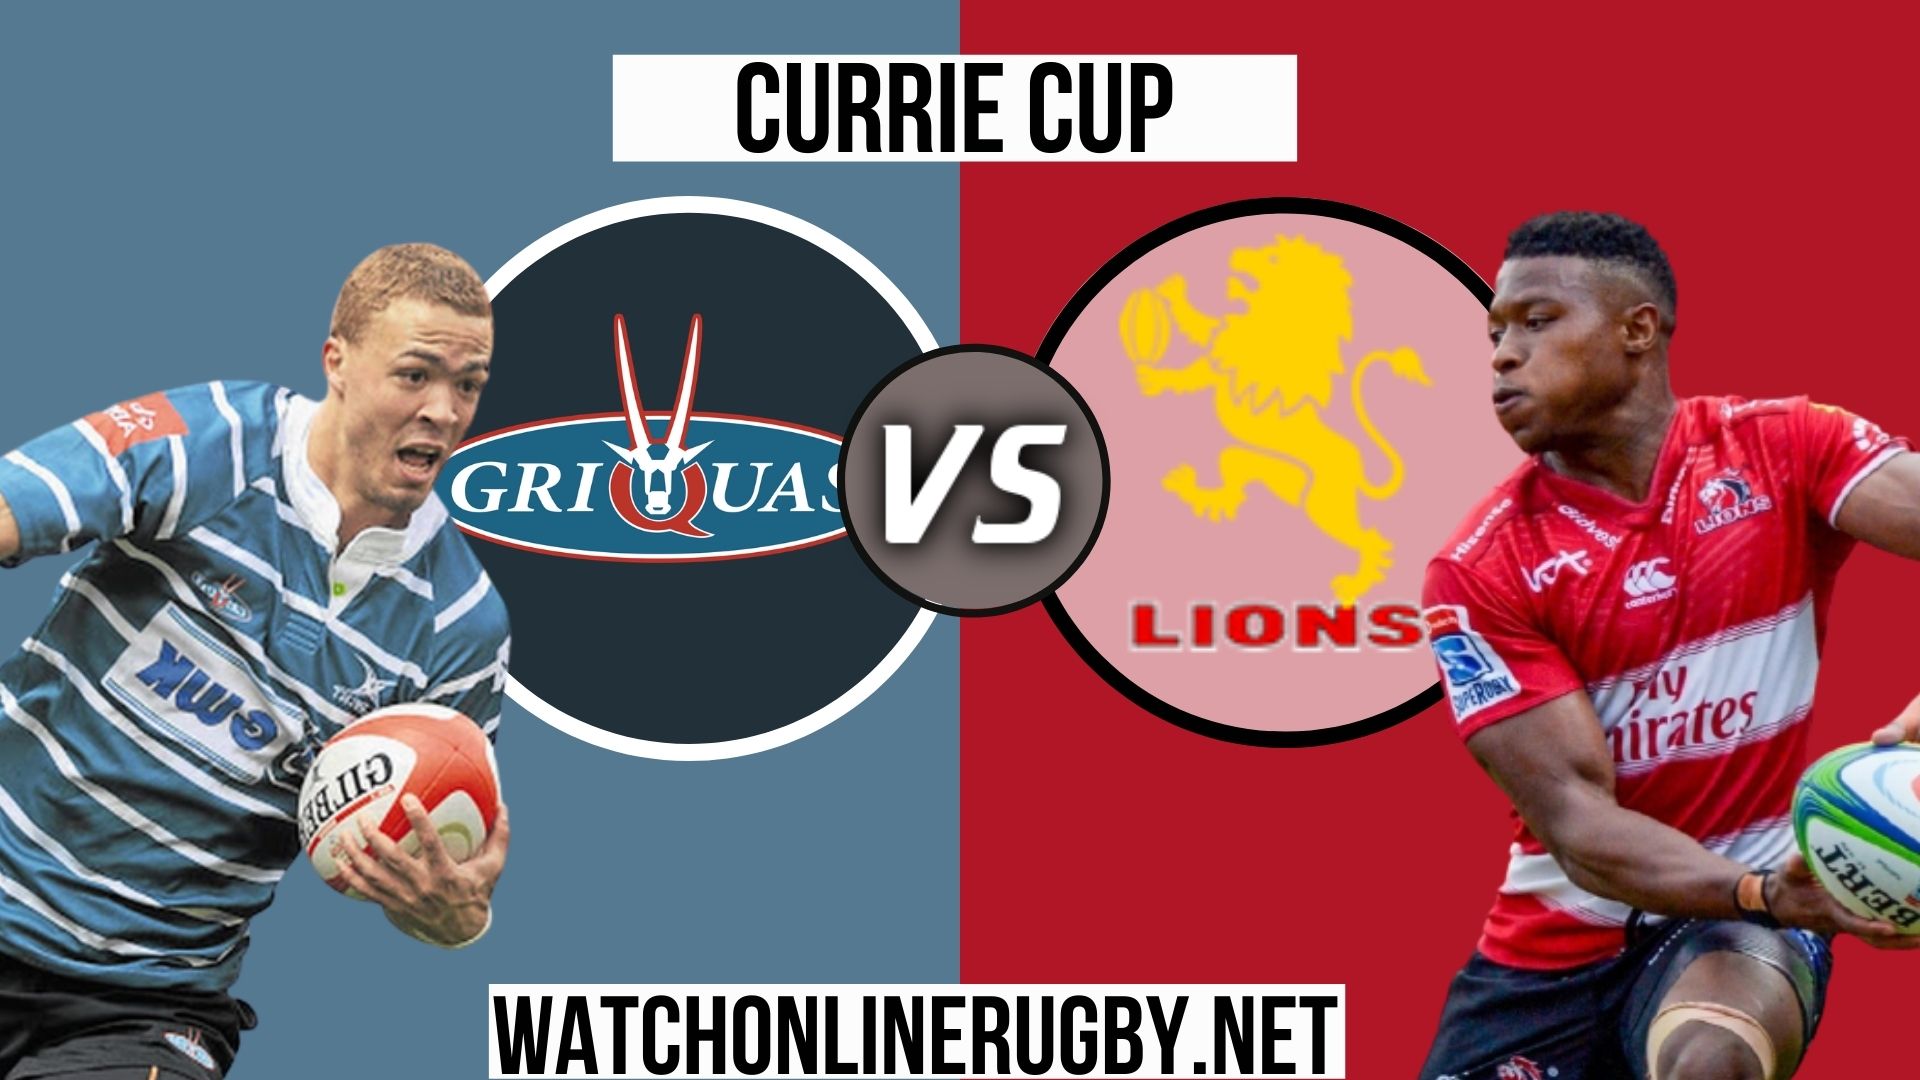 Griquas vs Lions Currie Cup 2020